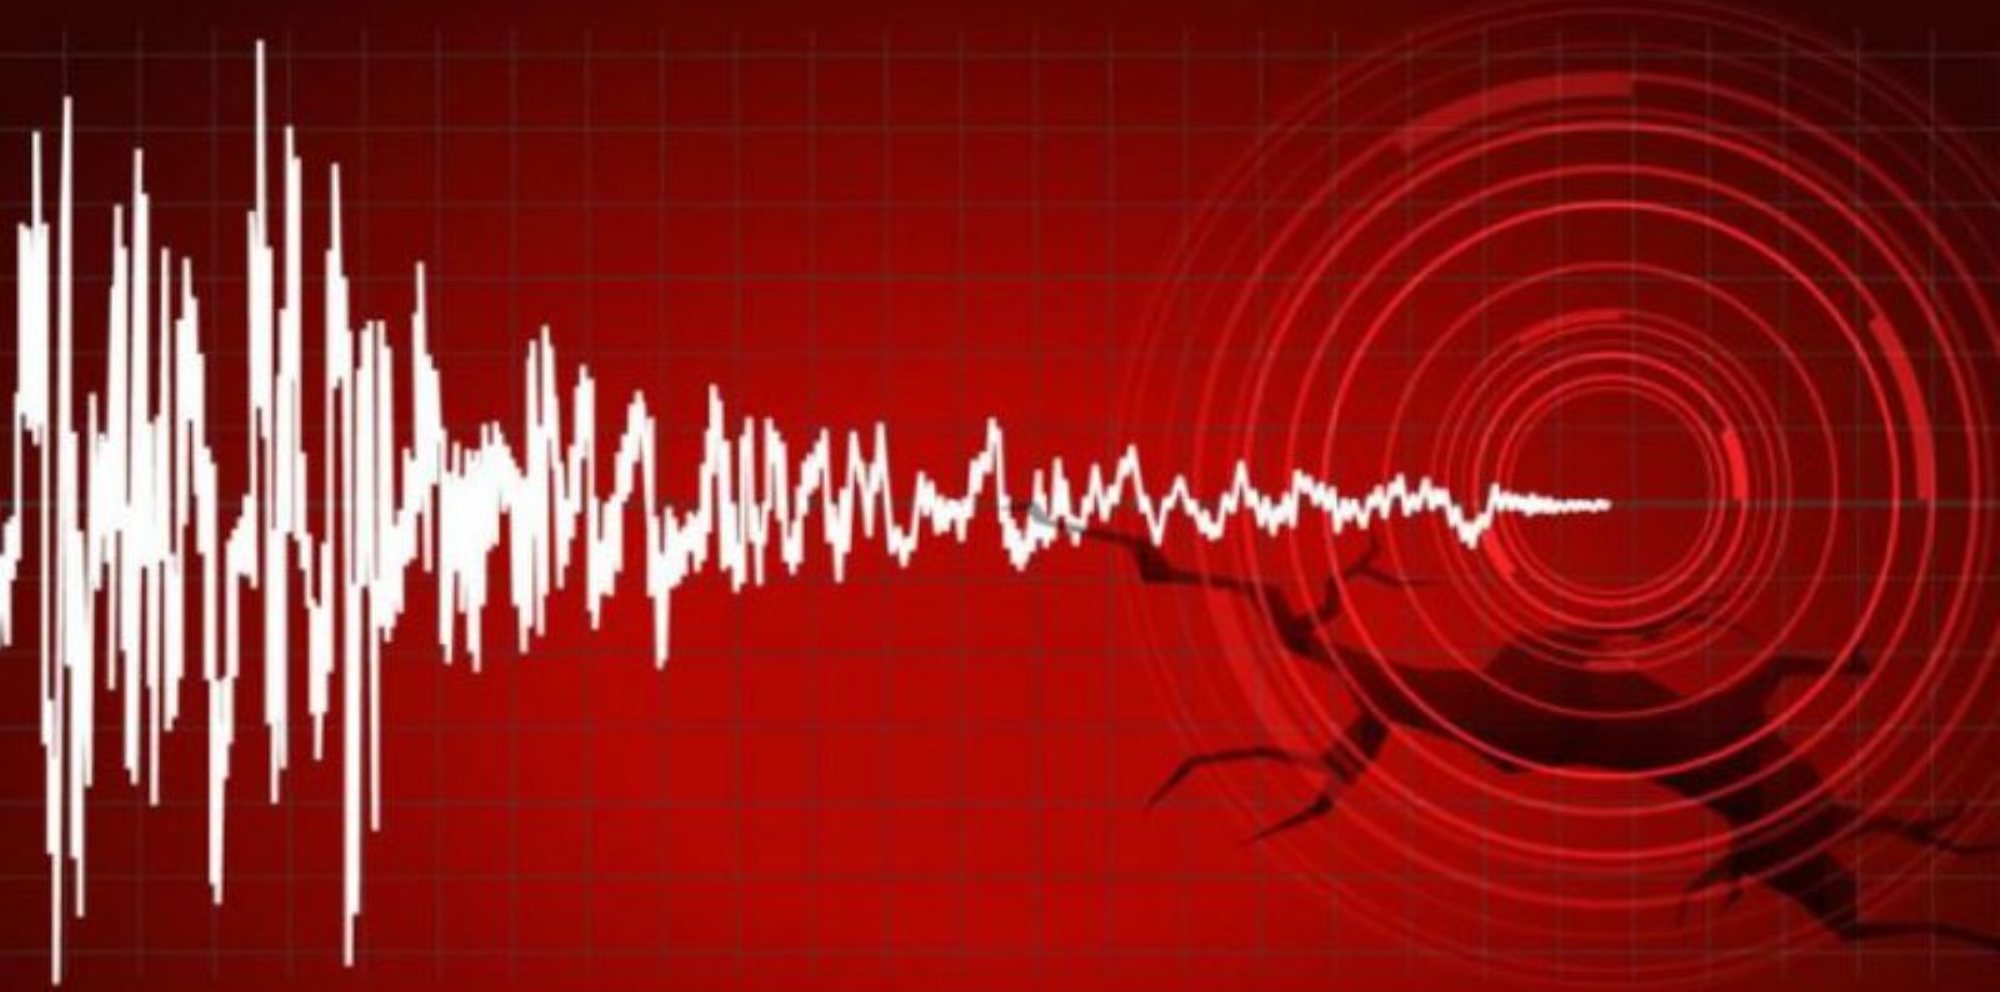 उत्तरी पेरूमा ७.५ रेक्टर स्केलको भूकम्प